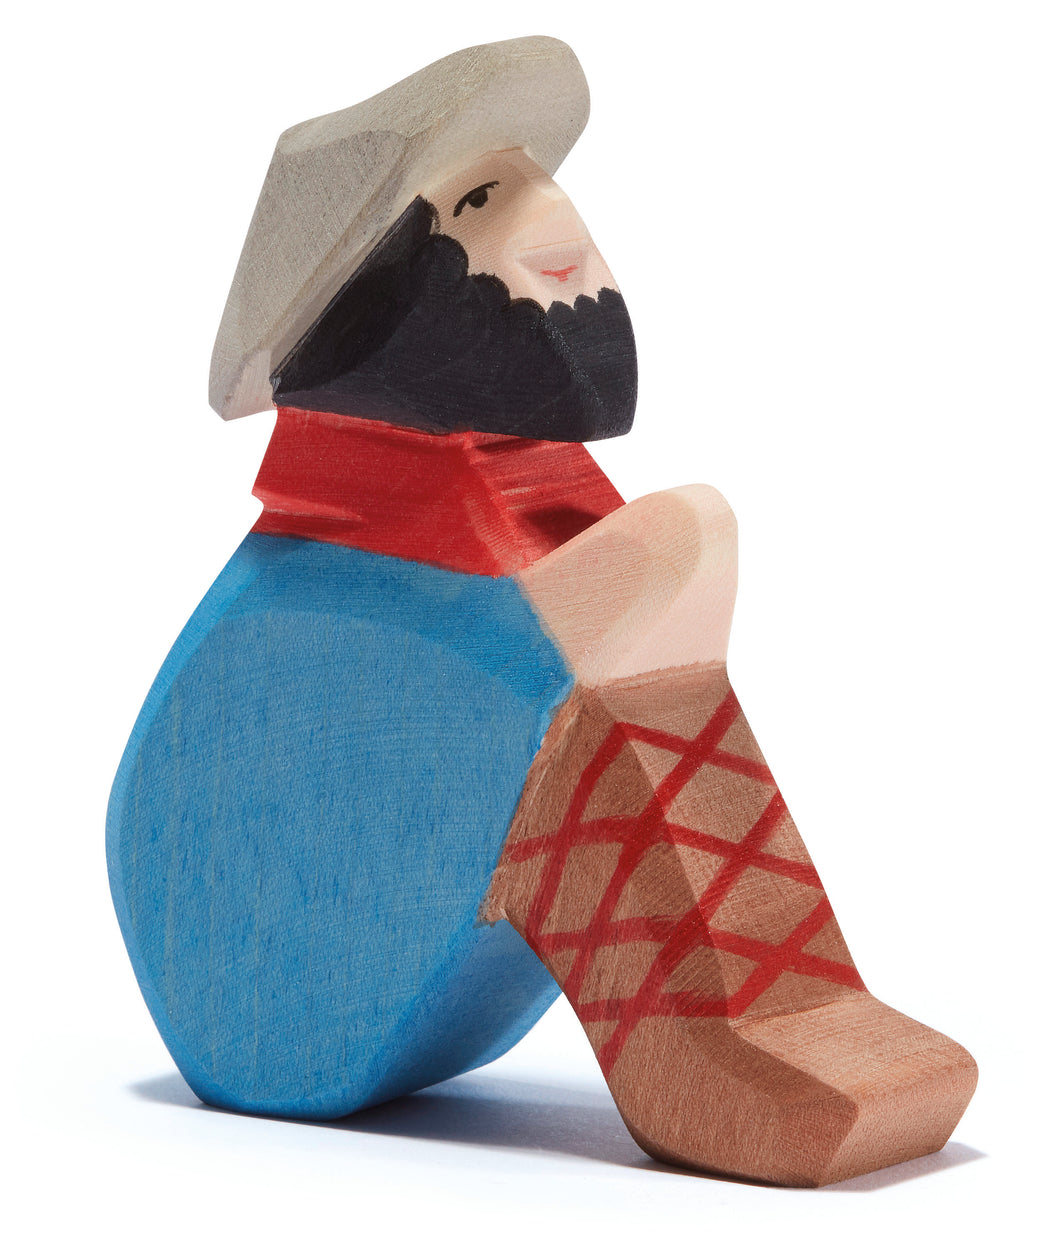 Hirte sitzend Spielfigur aus Holz von Ostheimer